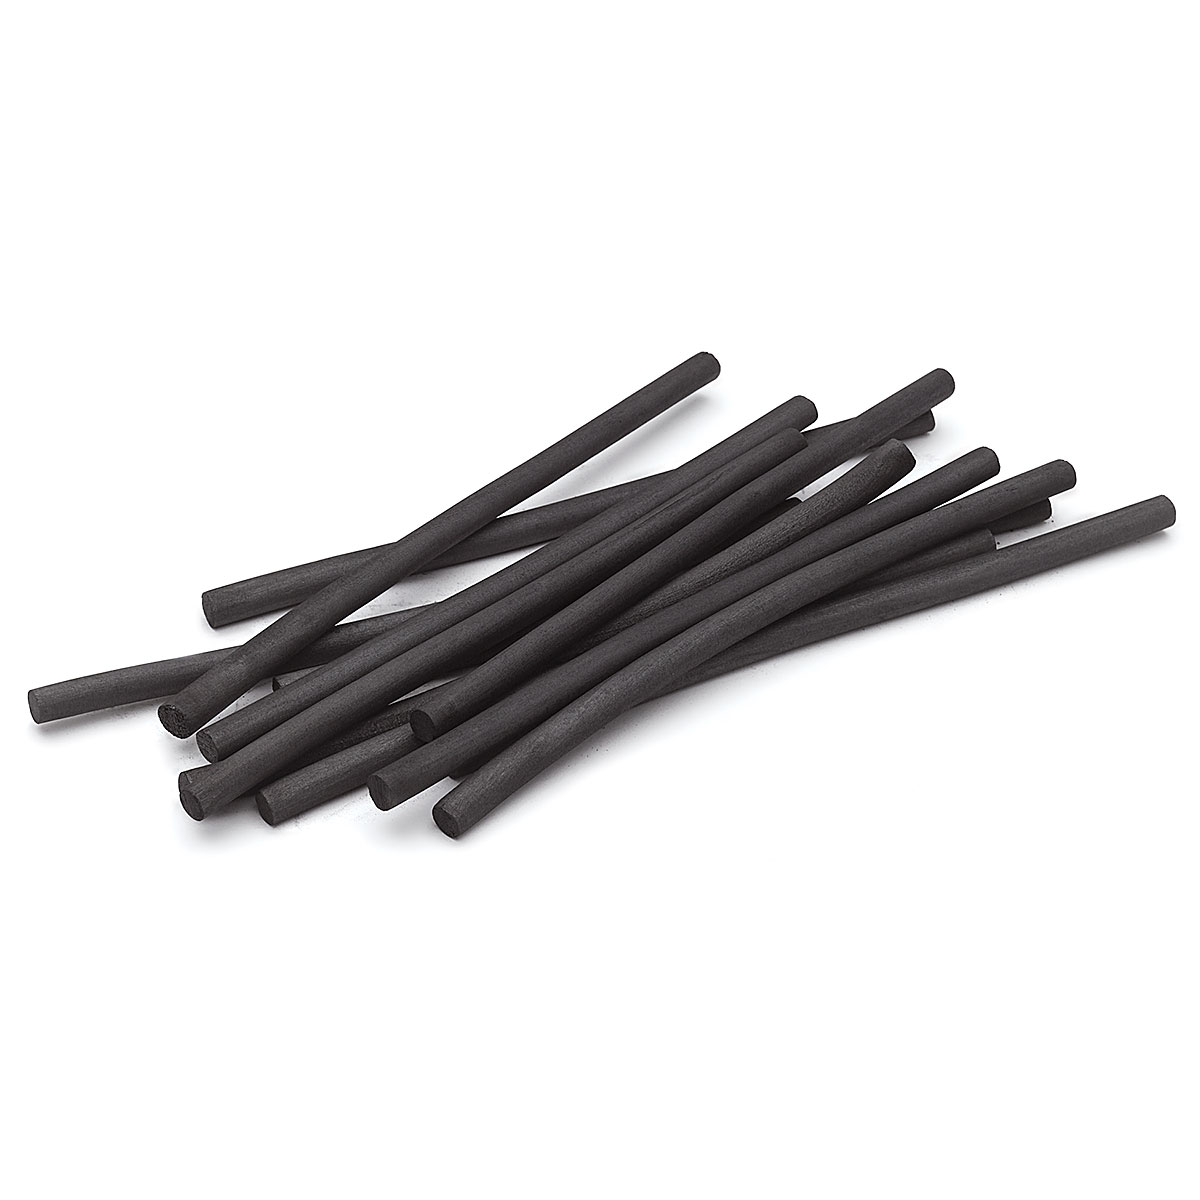 Medium Vine Charcoal Sticks (Pack of 12) @ Raw Materials Art Supplies